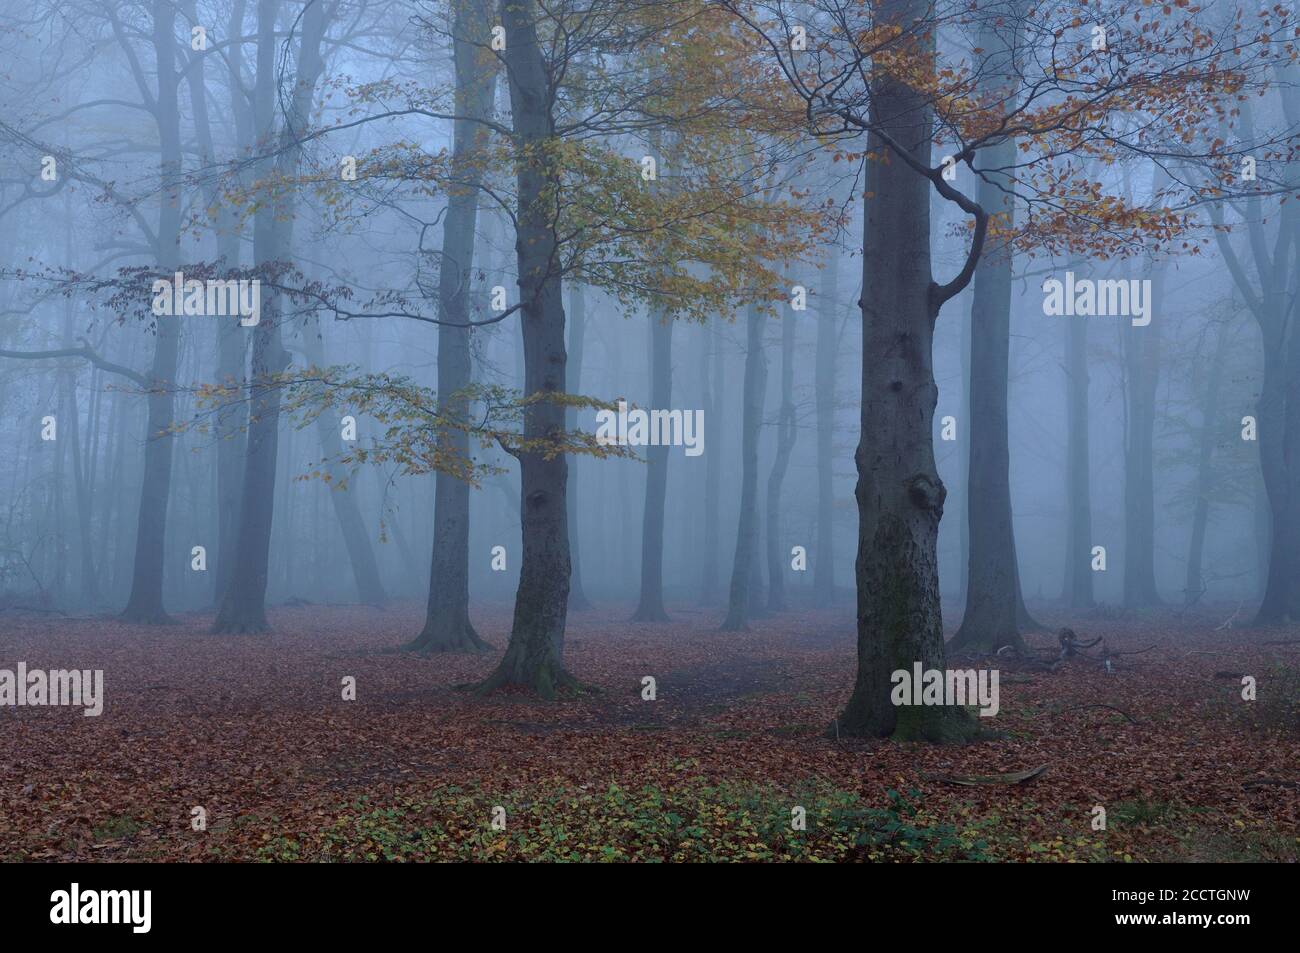 Vecchia foresta di faggio in autunno umore, scolorimento delle foglie, caduta delle foglie, nebbia fitta all'ora blu, tipico giorno di novembre, Europa. Foto Stock